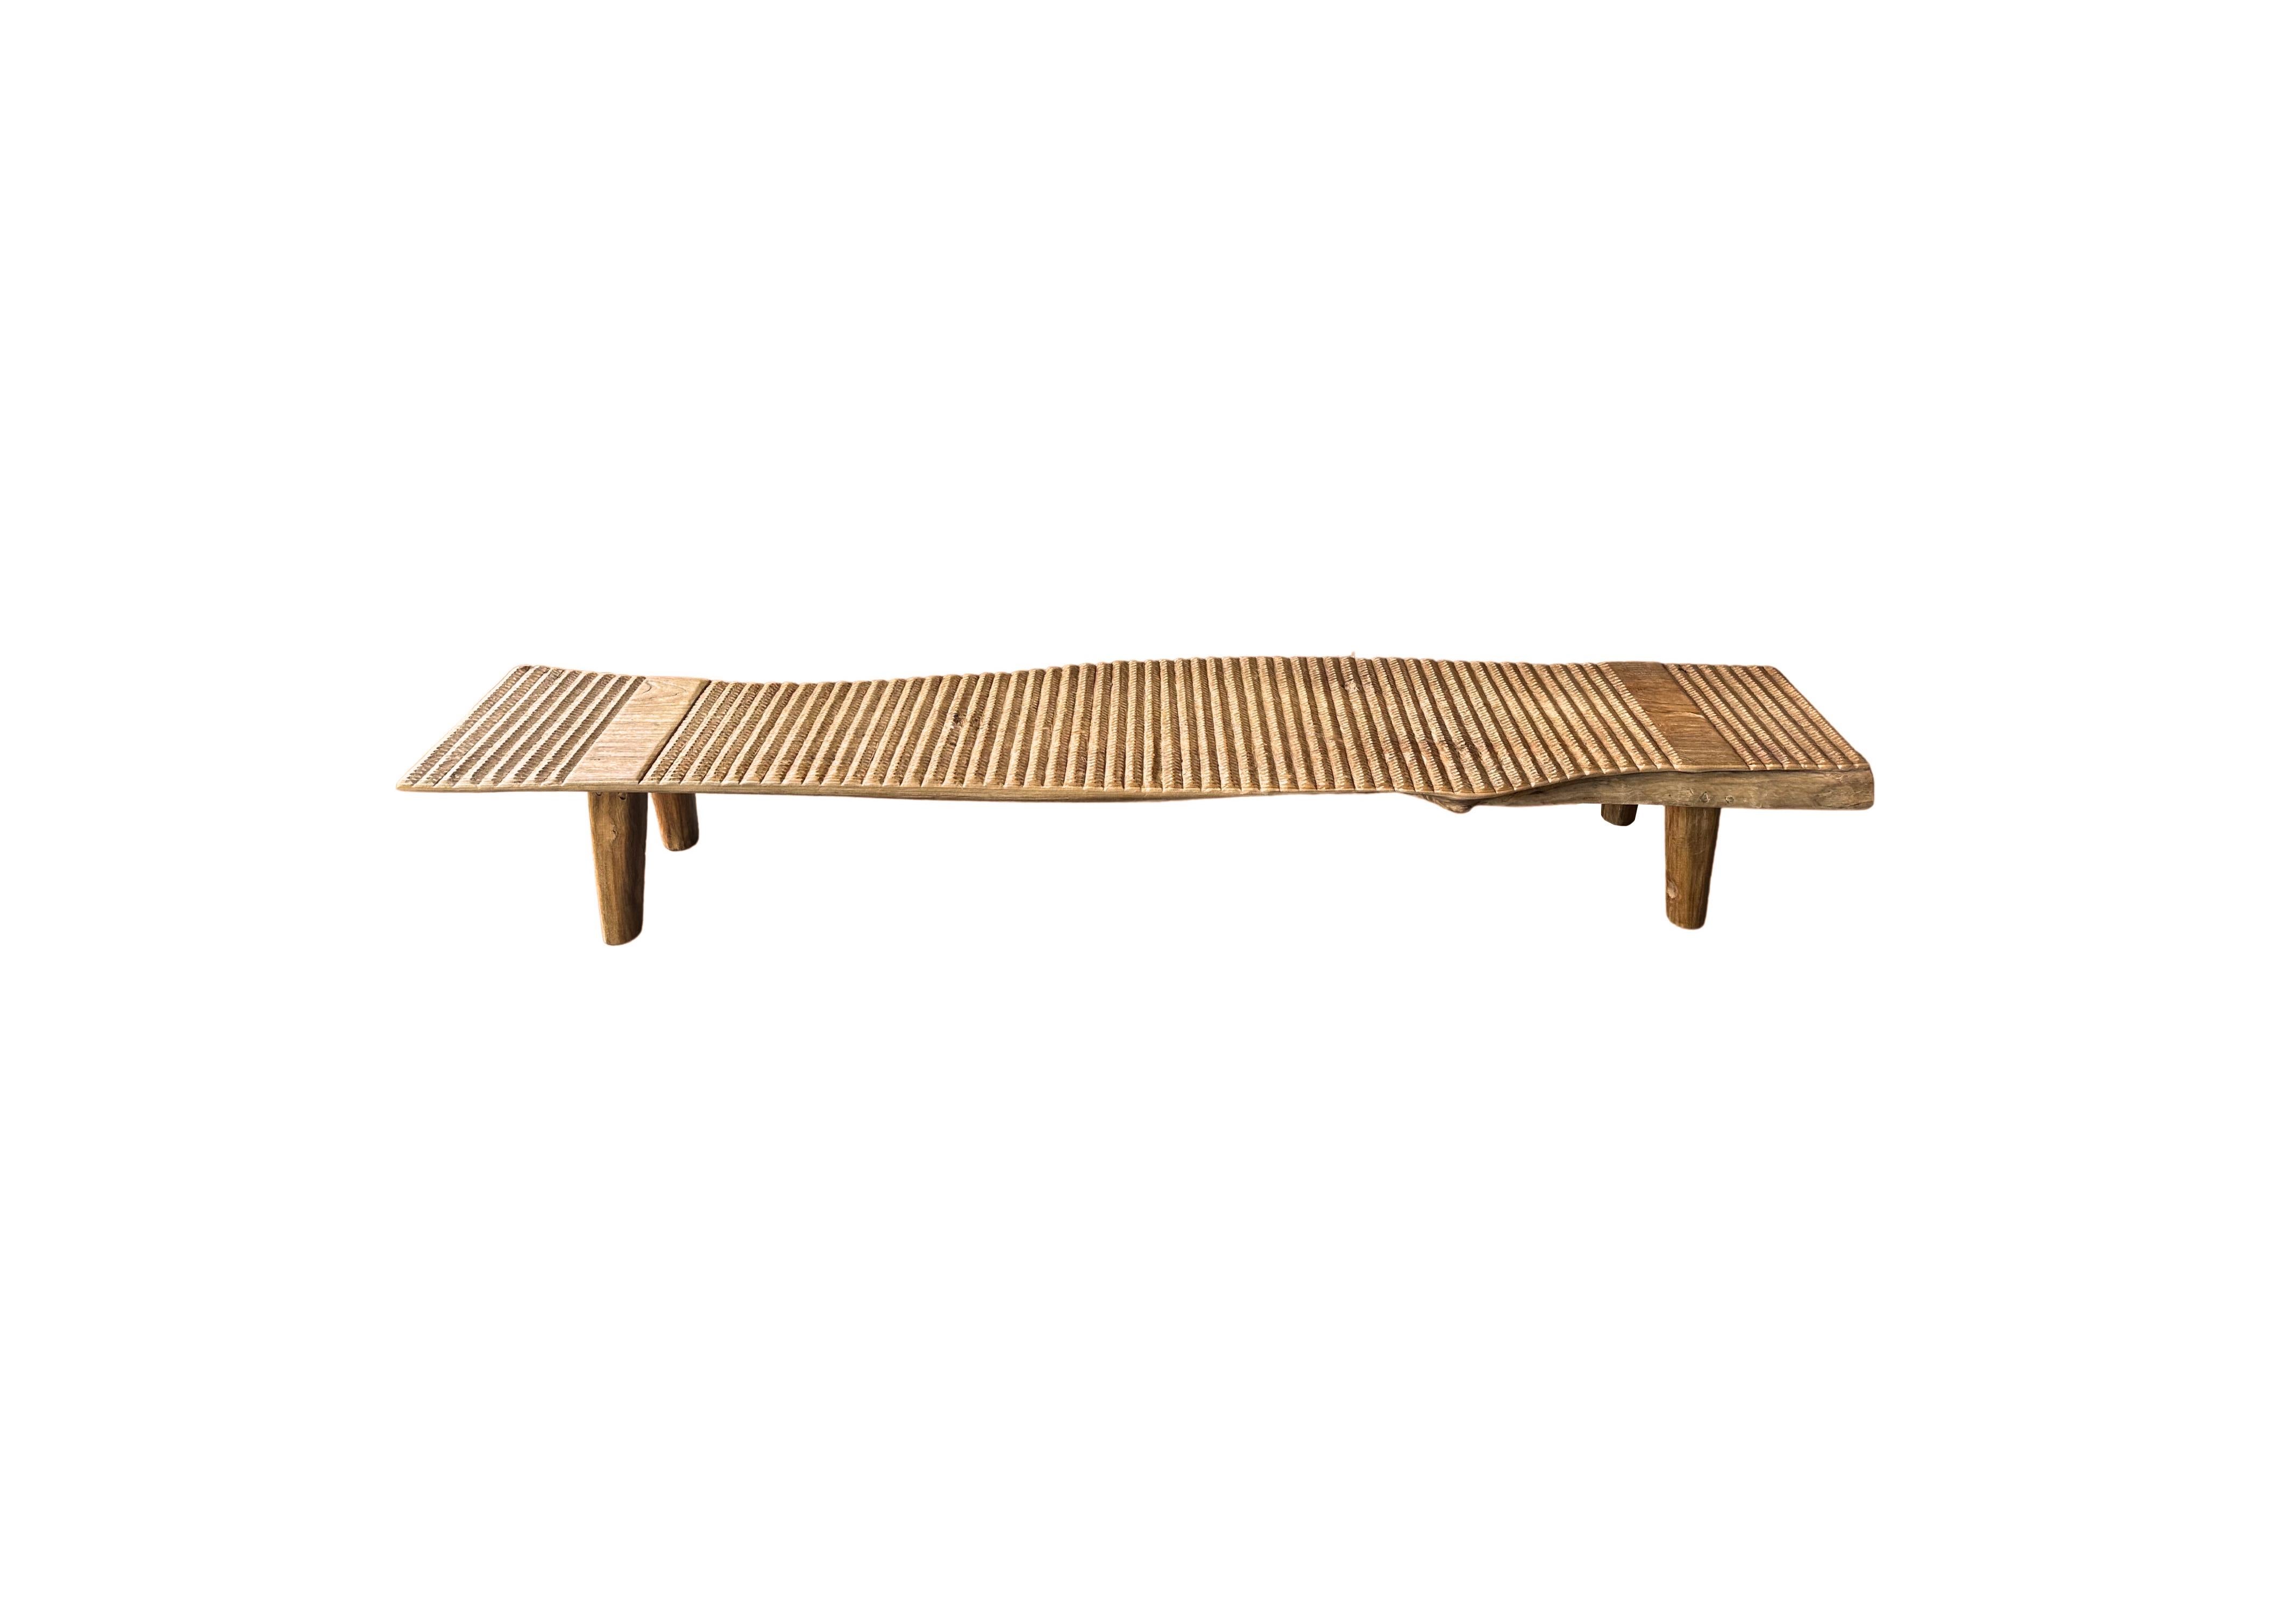 Teak Wood Sculptural Long Bench, Carved Detailing, Modern Organic For Sale 5